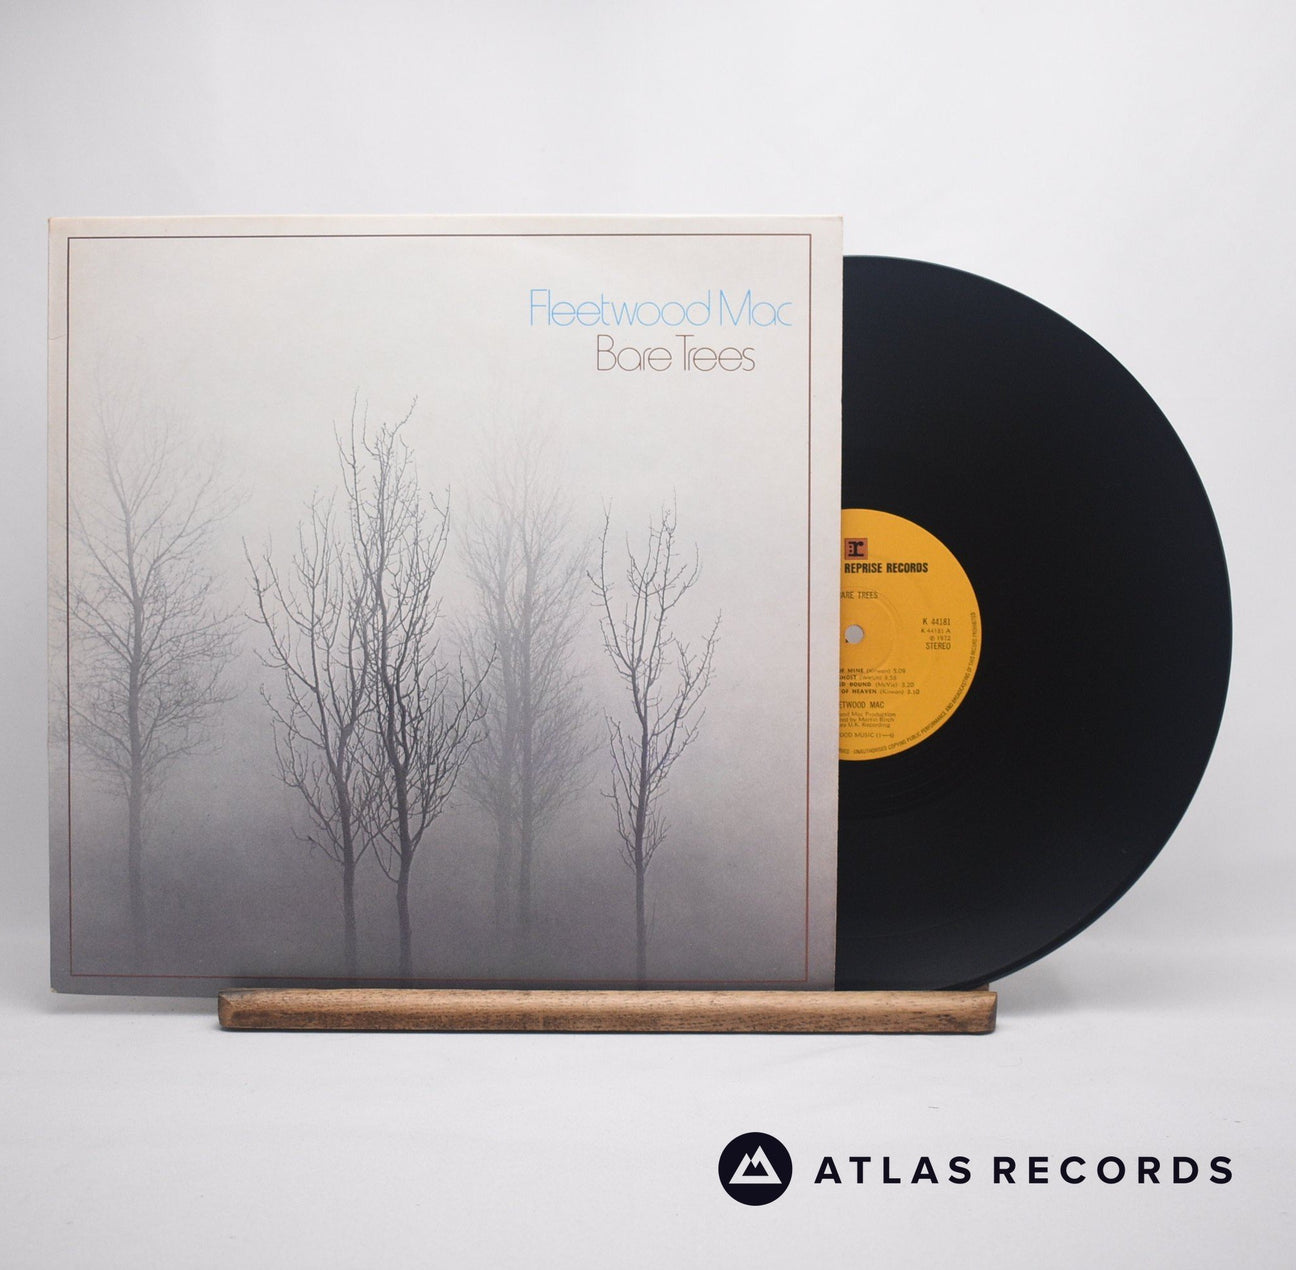 Fleetwood Mac Bare Trees LP Vinyl Record - Front Cover & Record